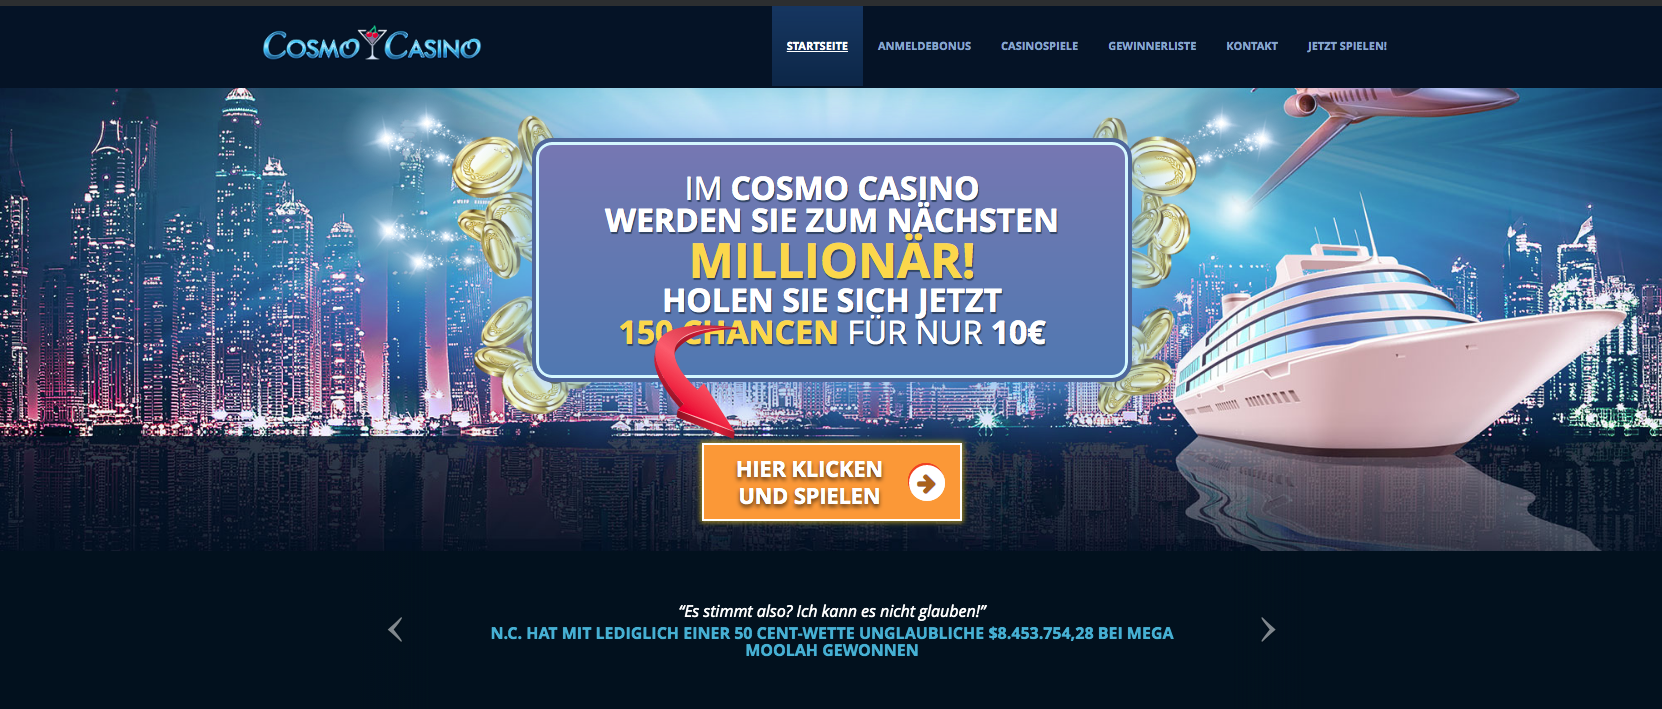 бонусы Cosmo Casino $5